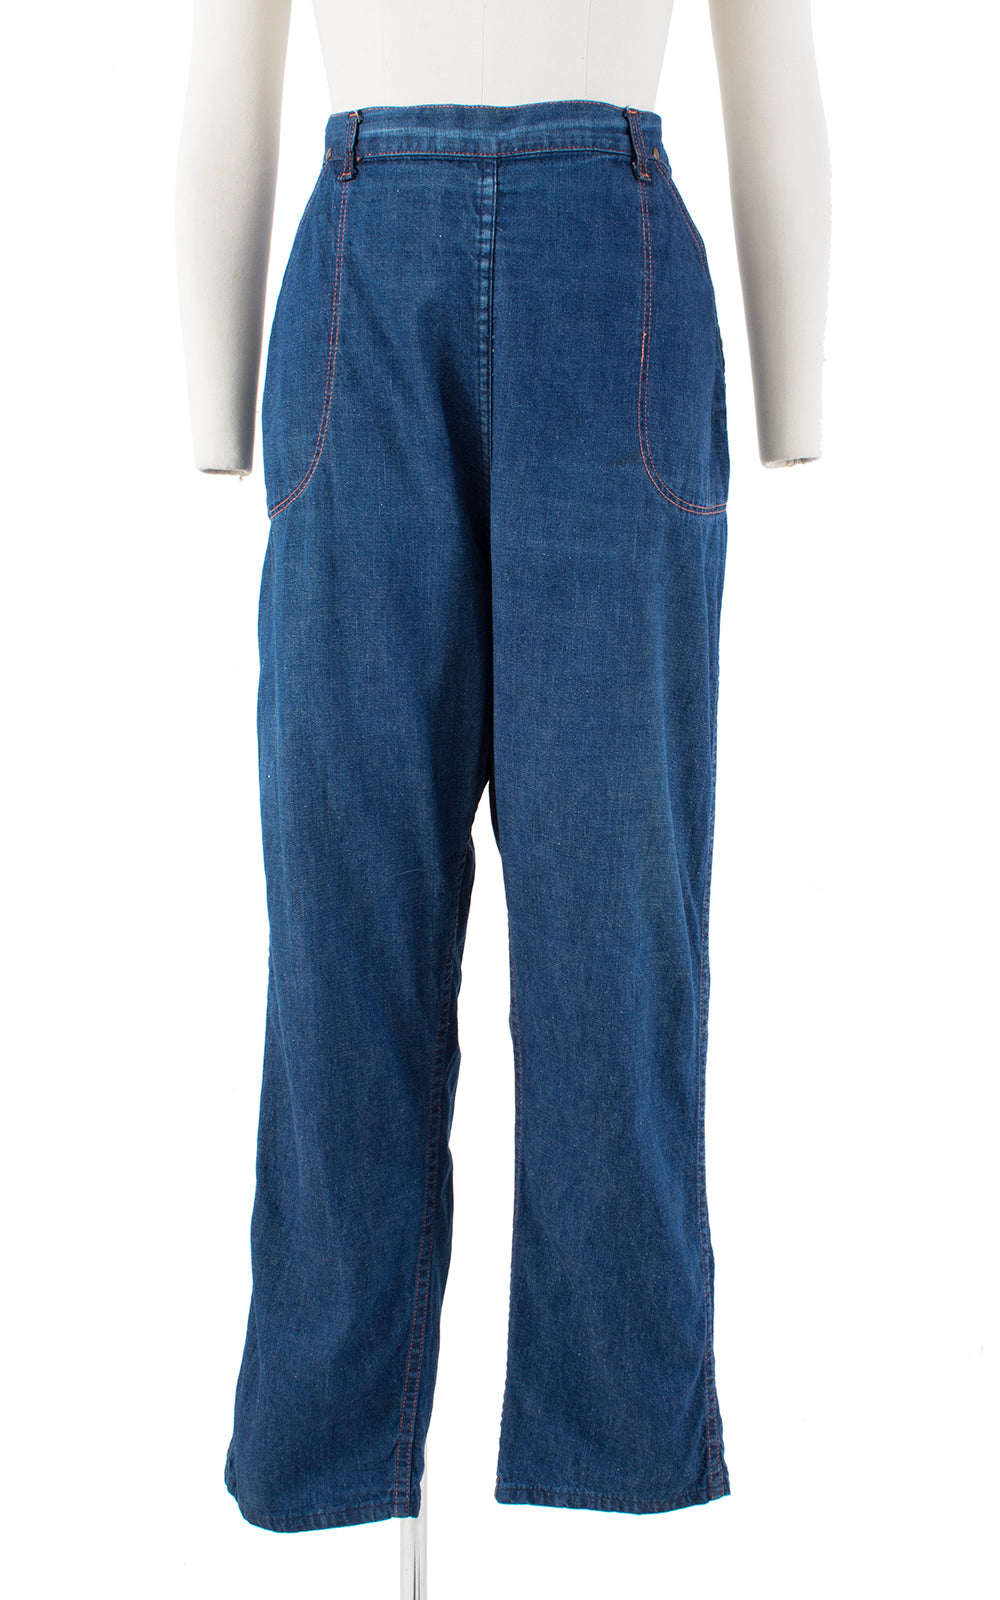 1940s Side Zipper Adjustable High Waist Blue Denim Jeans | medium